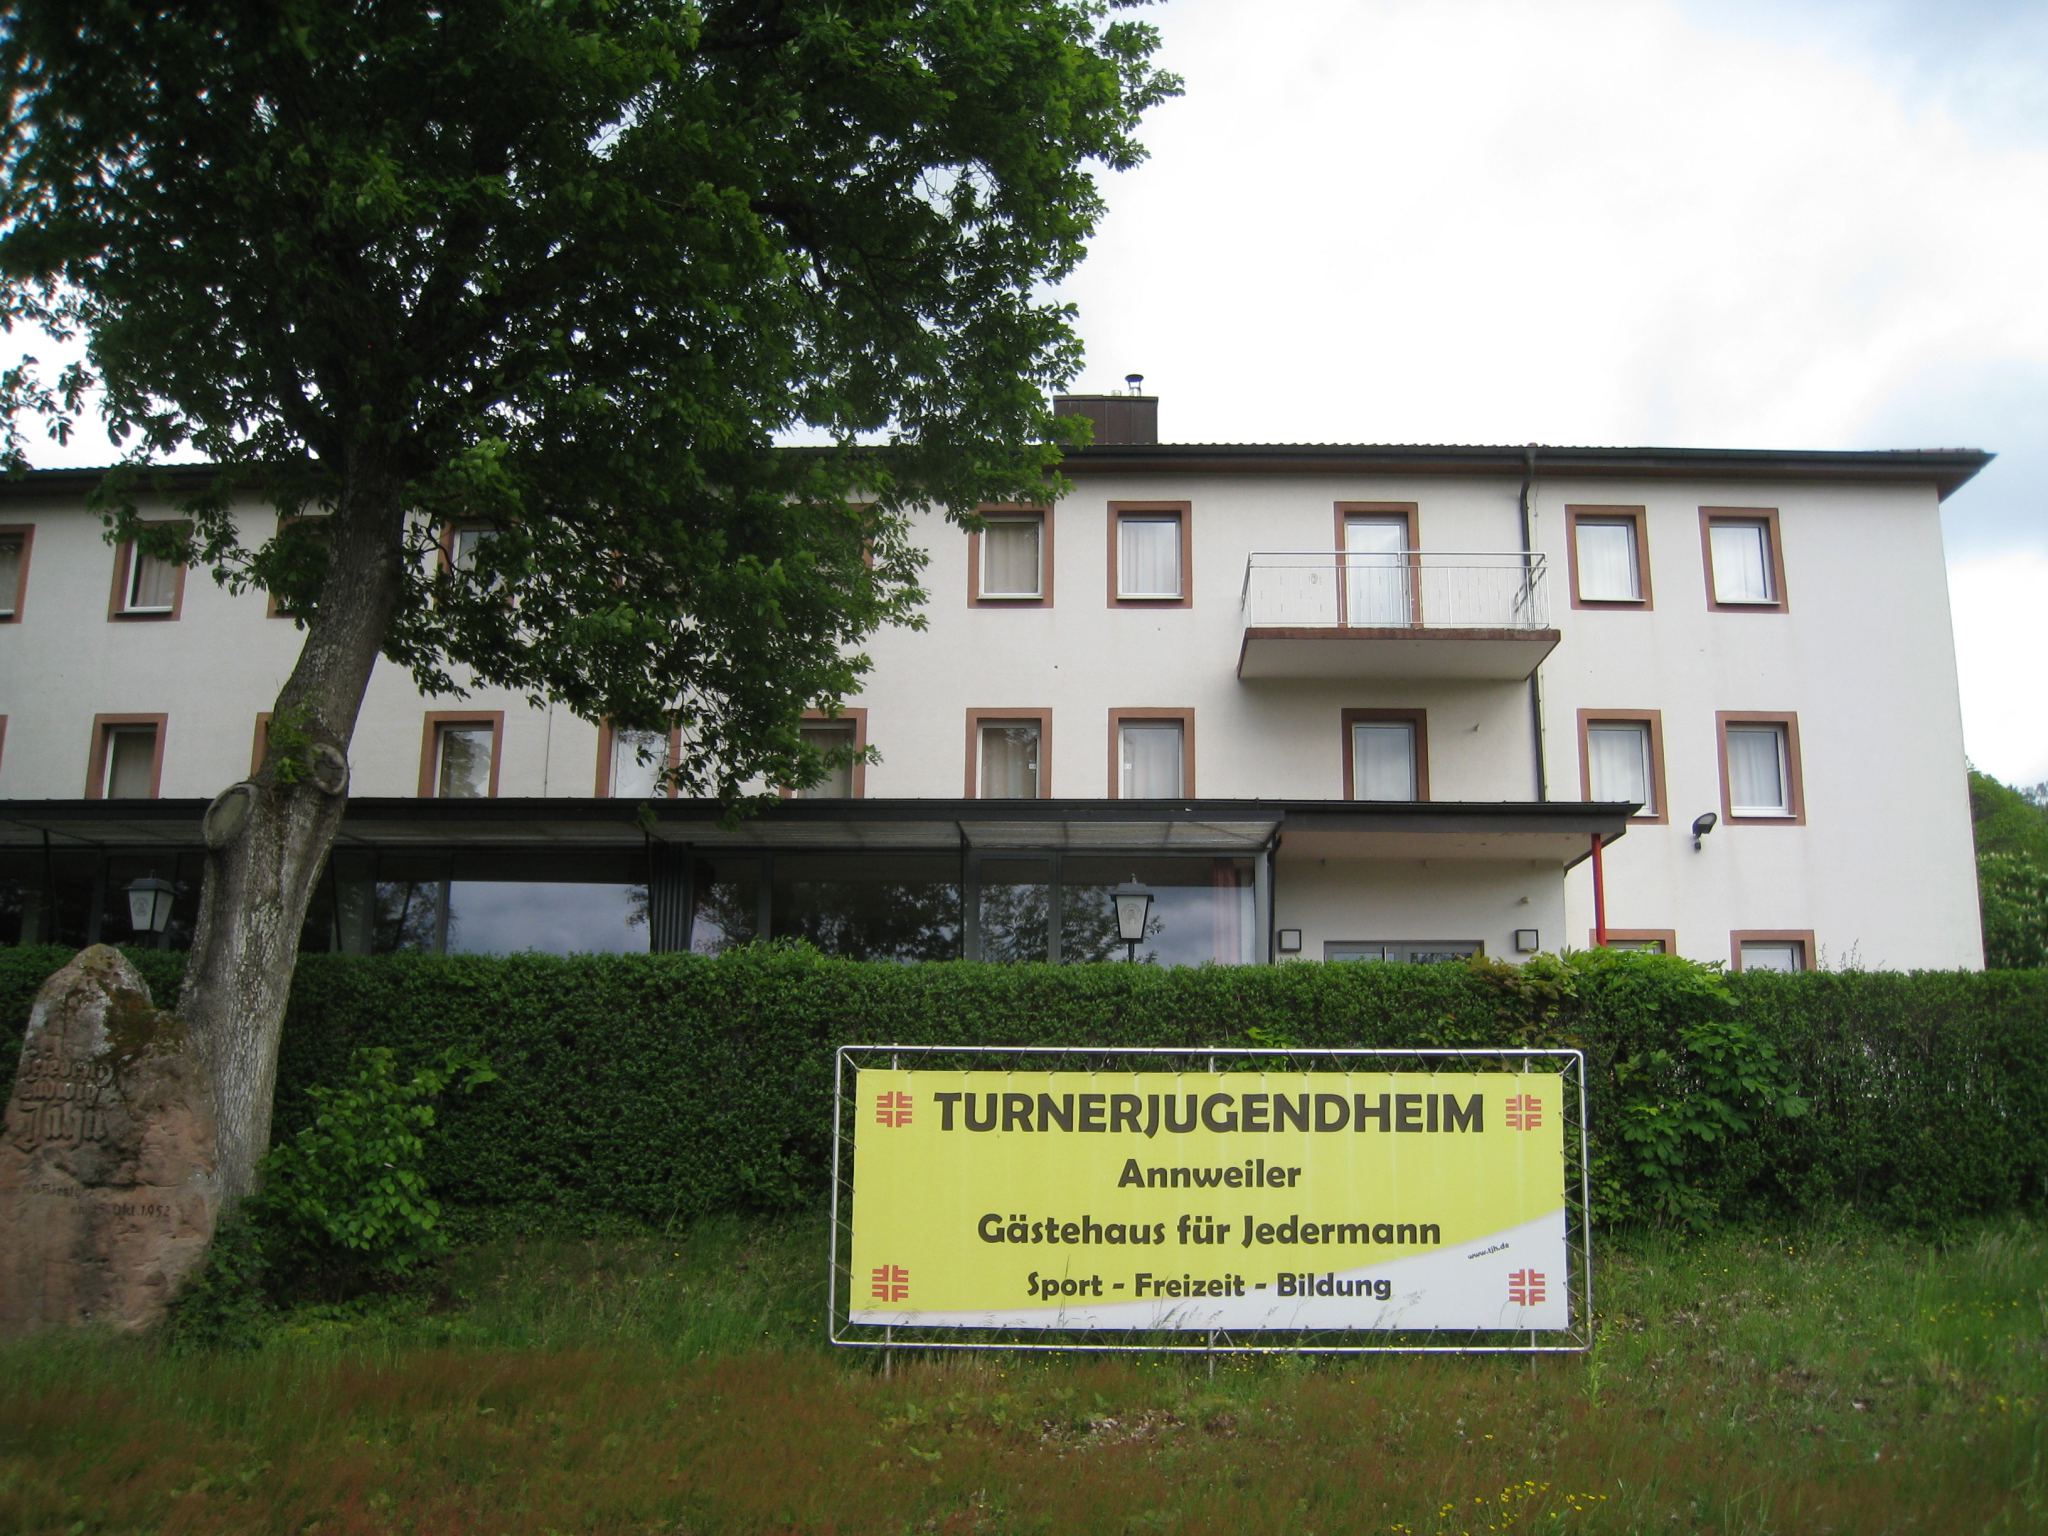 Turnerjugendheim Annweiler - ©Christian Bohr